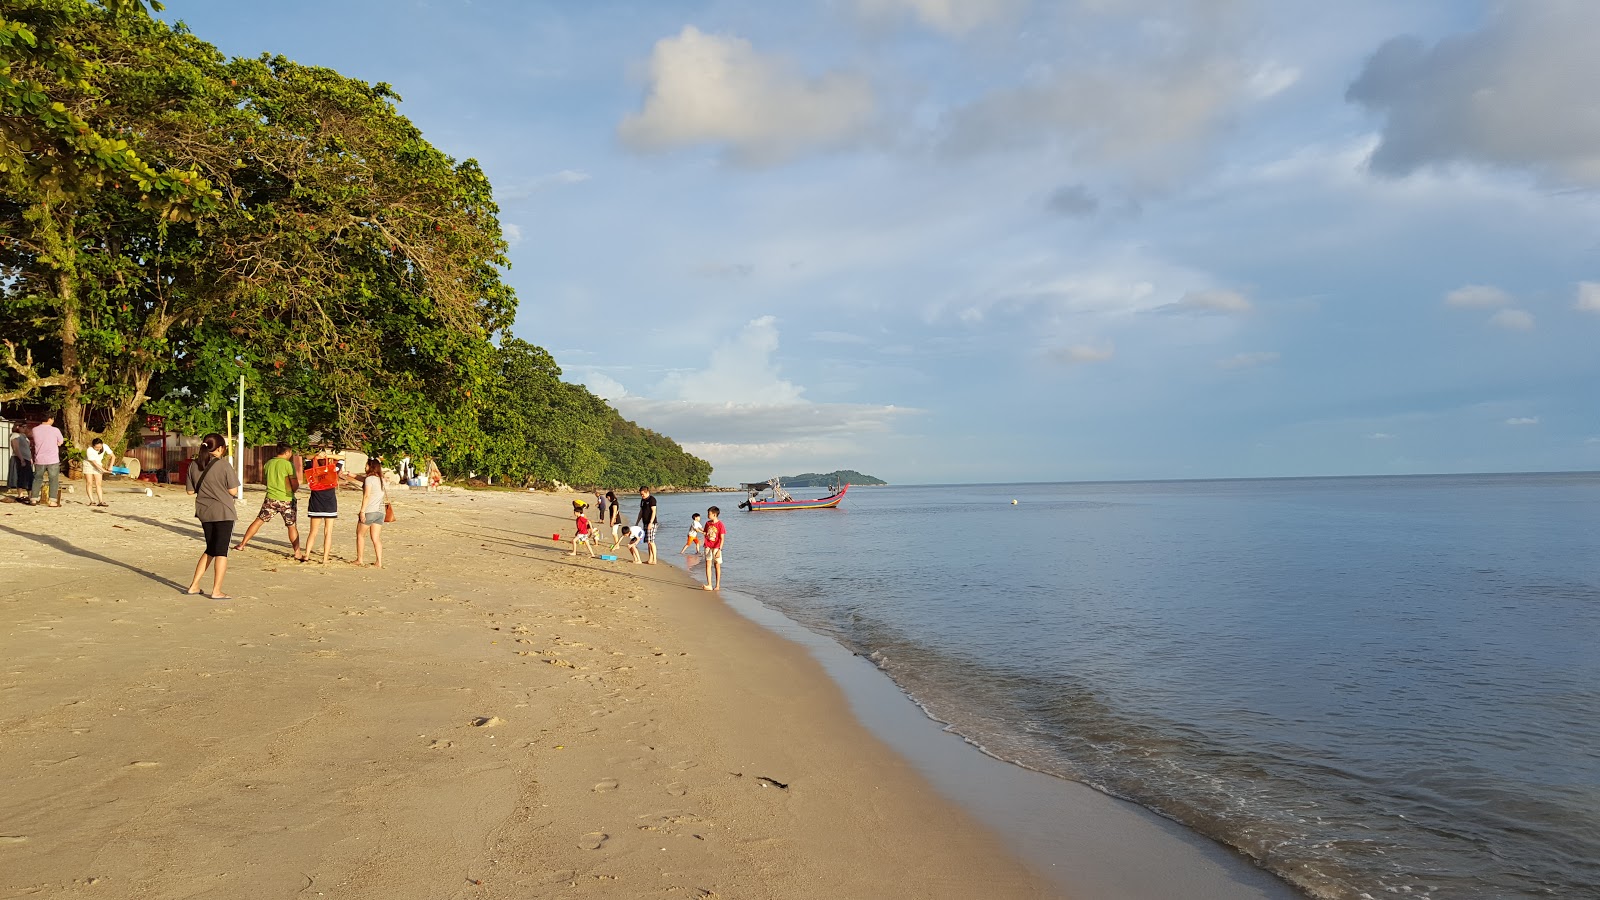 Fotografija Ombak Damai Beach priljubljeno mesto med poznavalci sprostitve